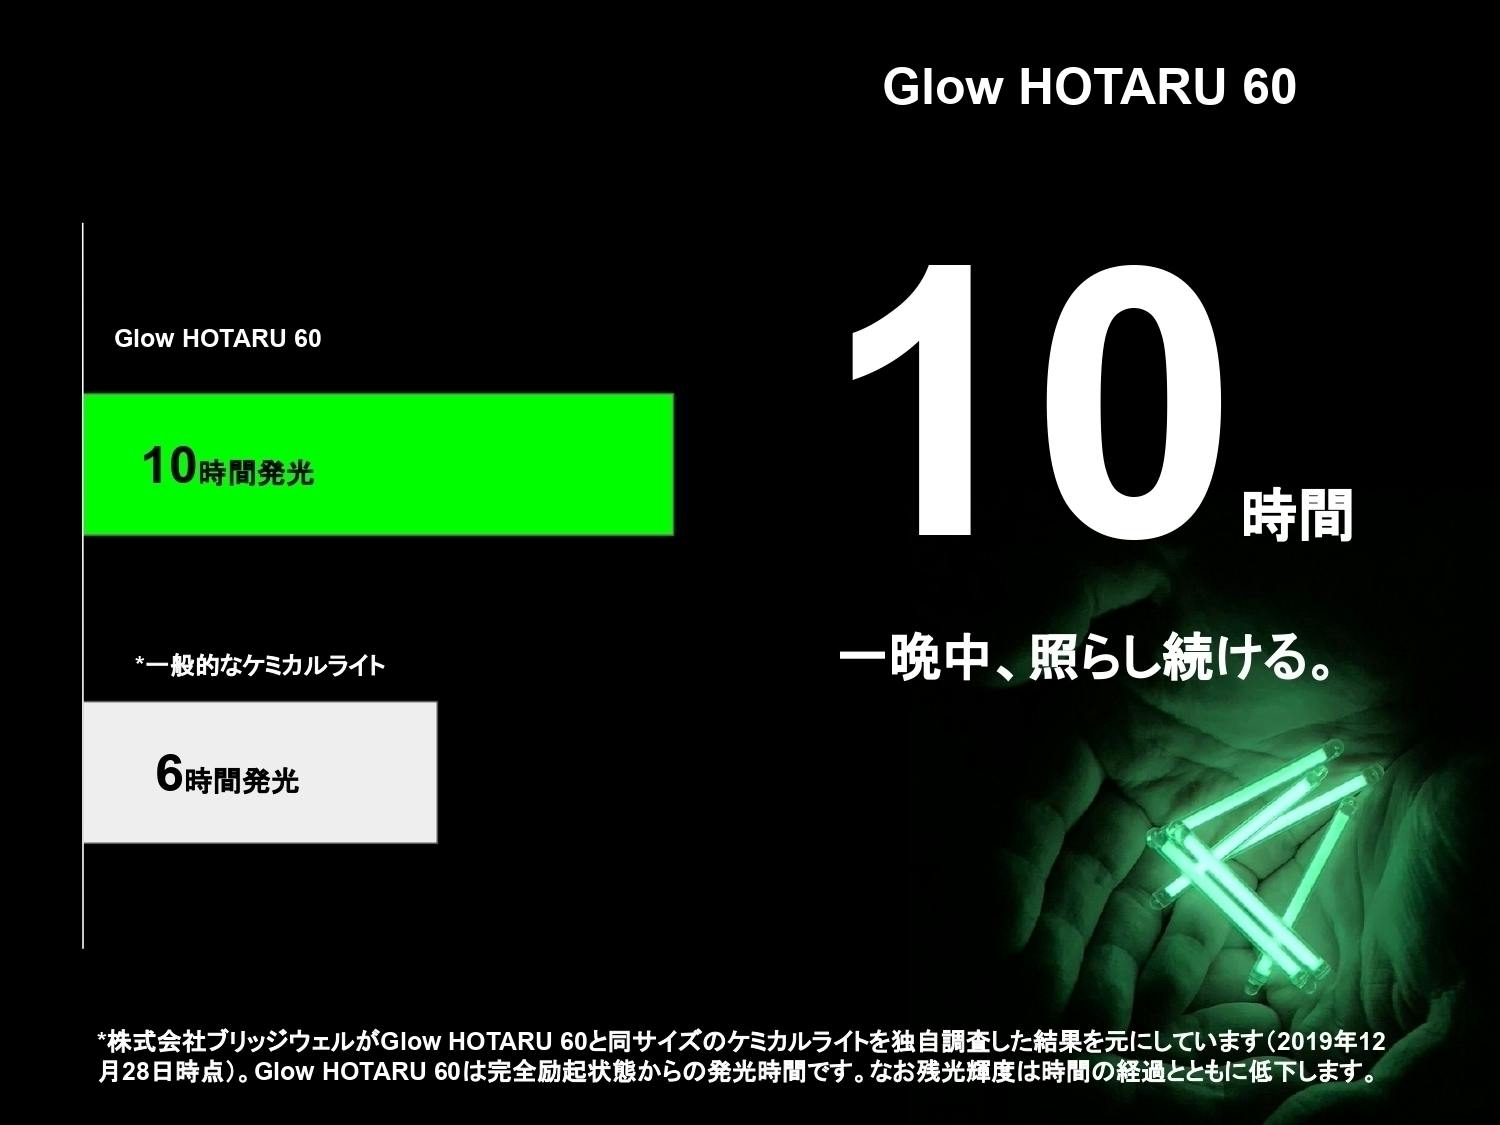 釣り人必携】くり返し使えるグローライト「Glow HOTARU 60」 - CAMPFIRE (キャンプファイヤー)